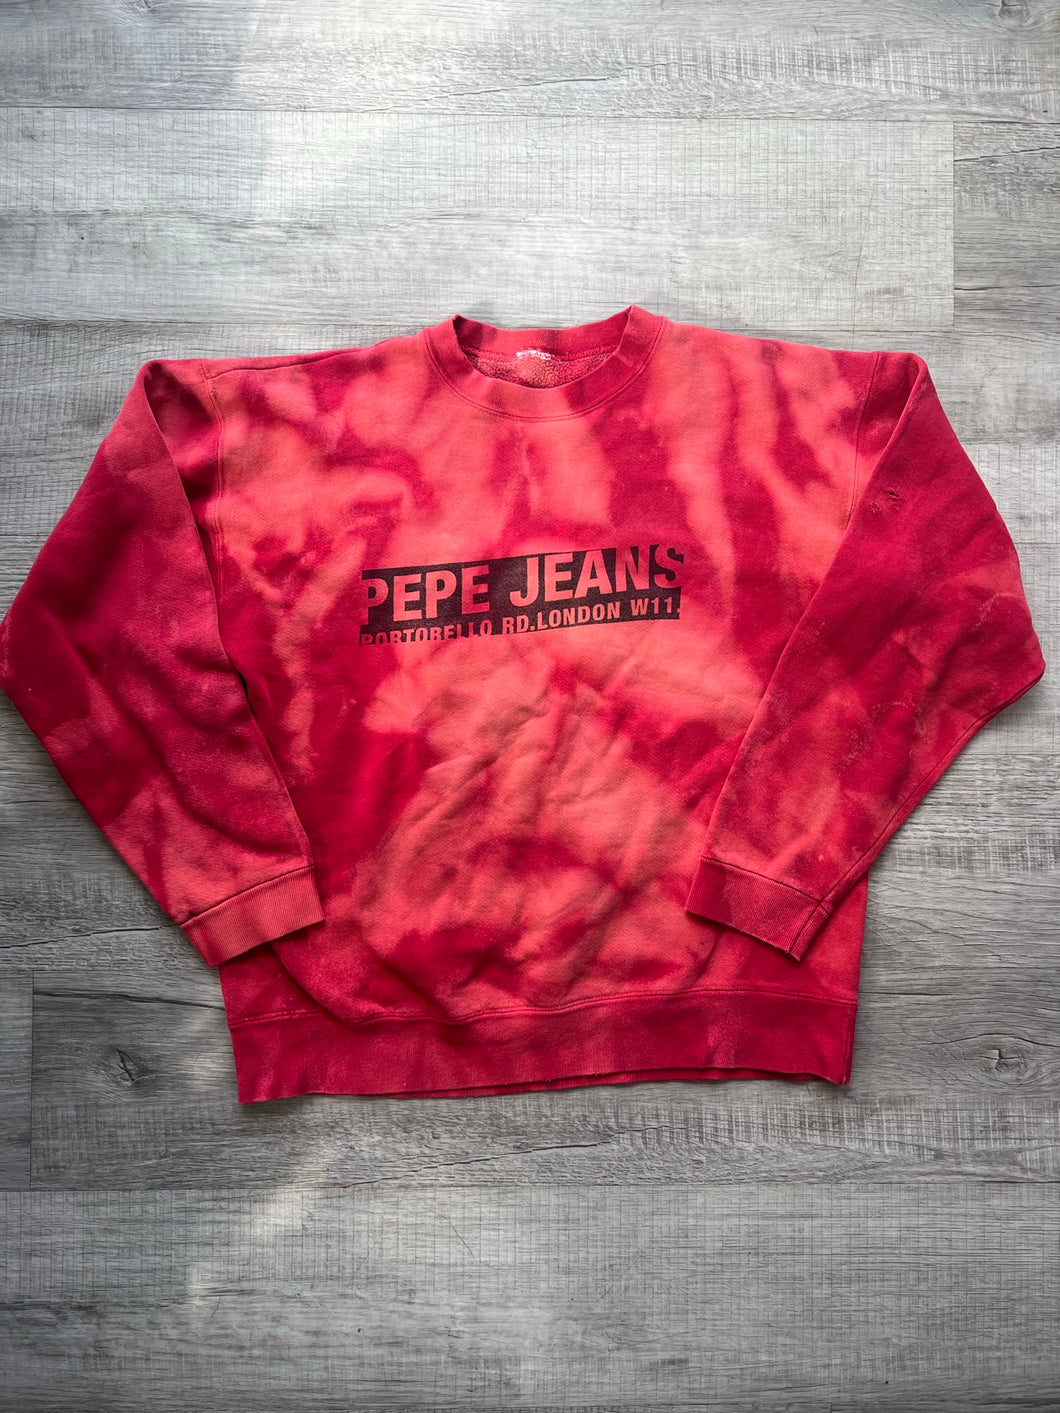 Vintage Pepe Jeans London Bleach Dye Crewneck